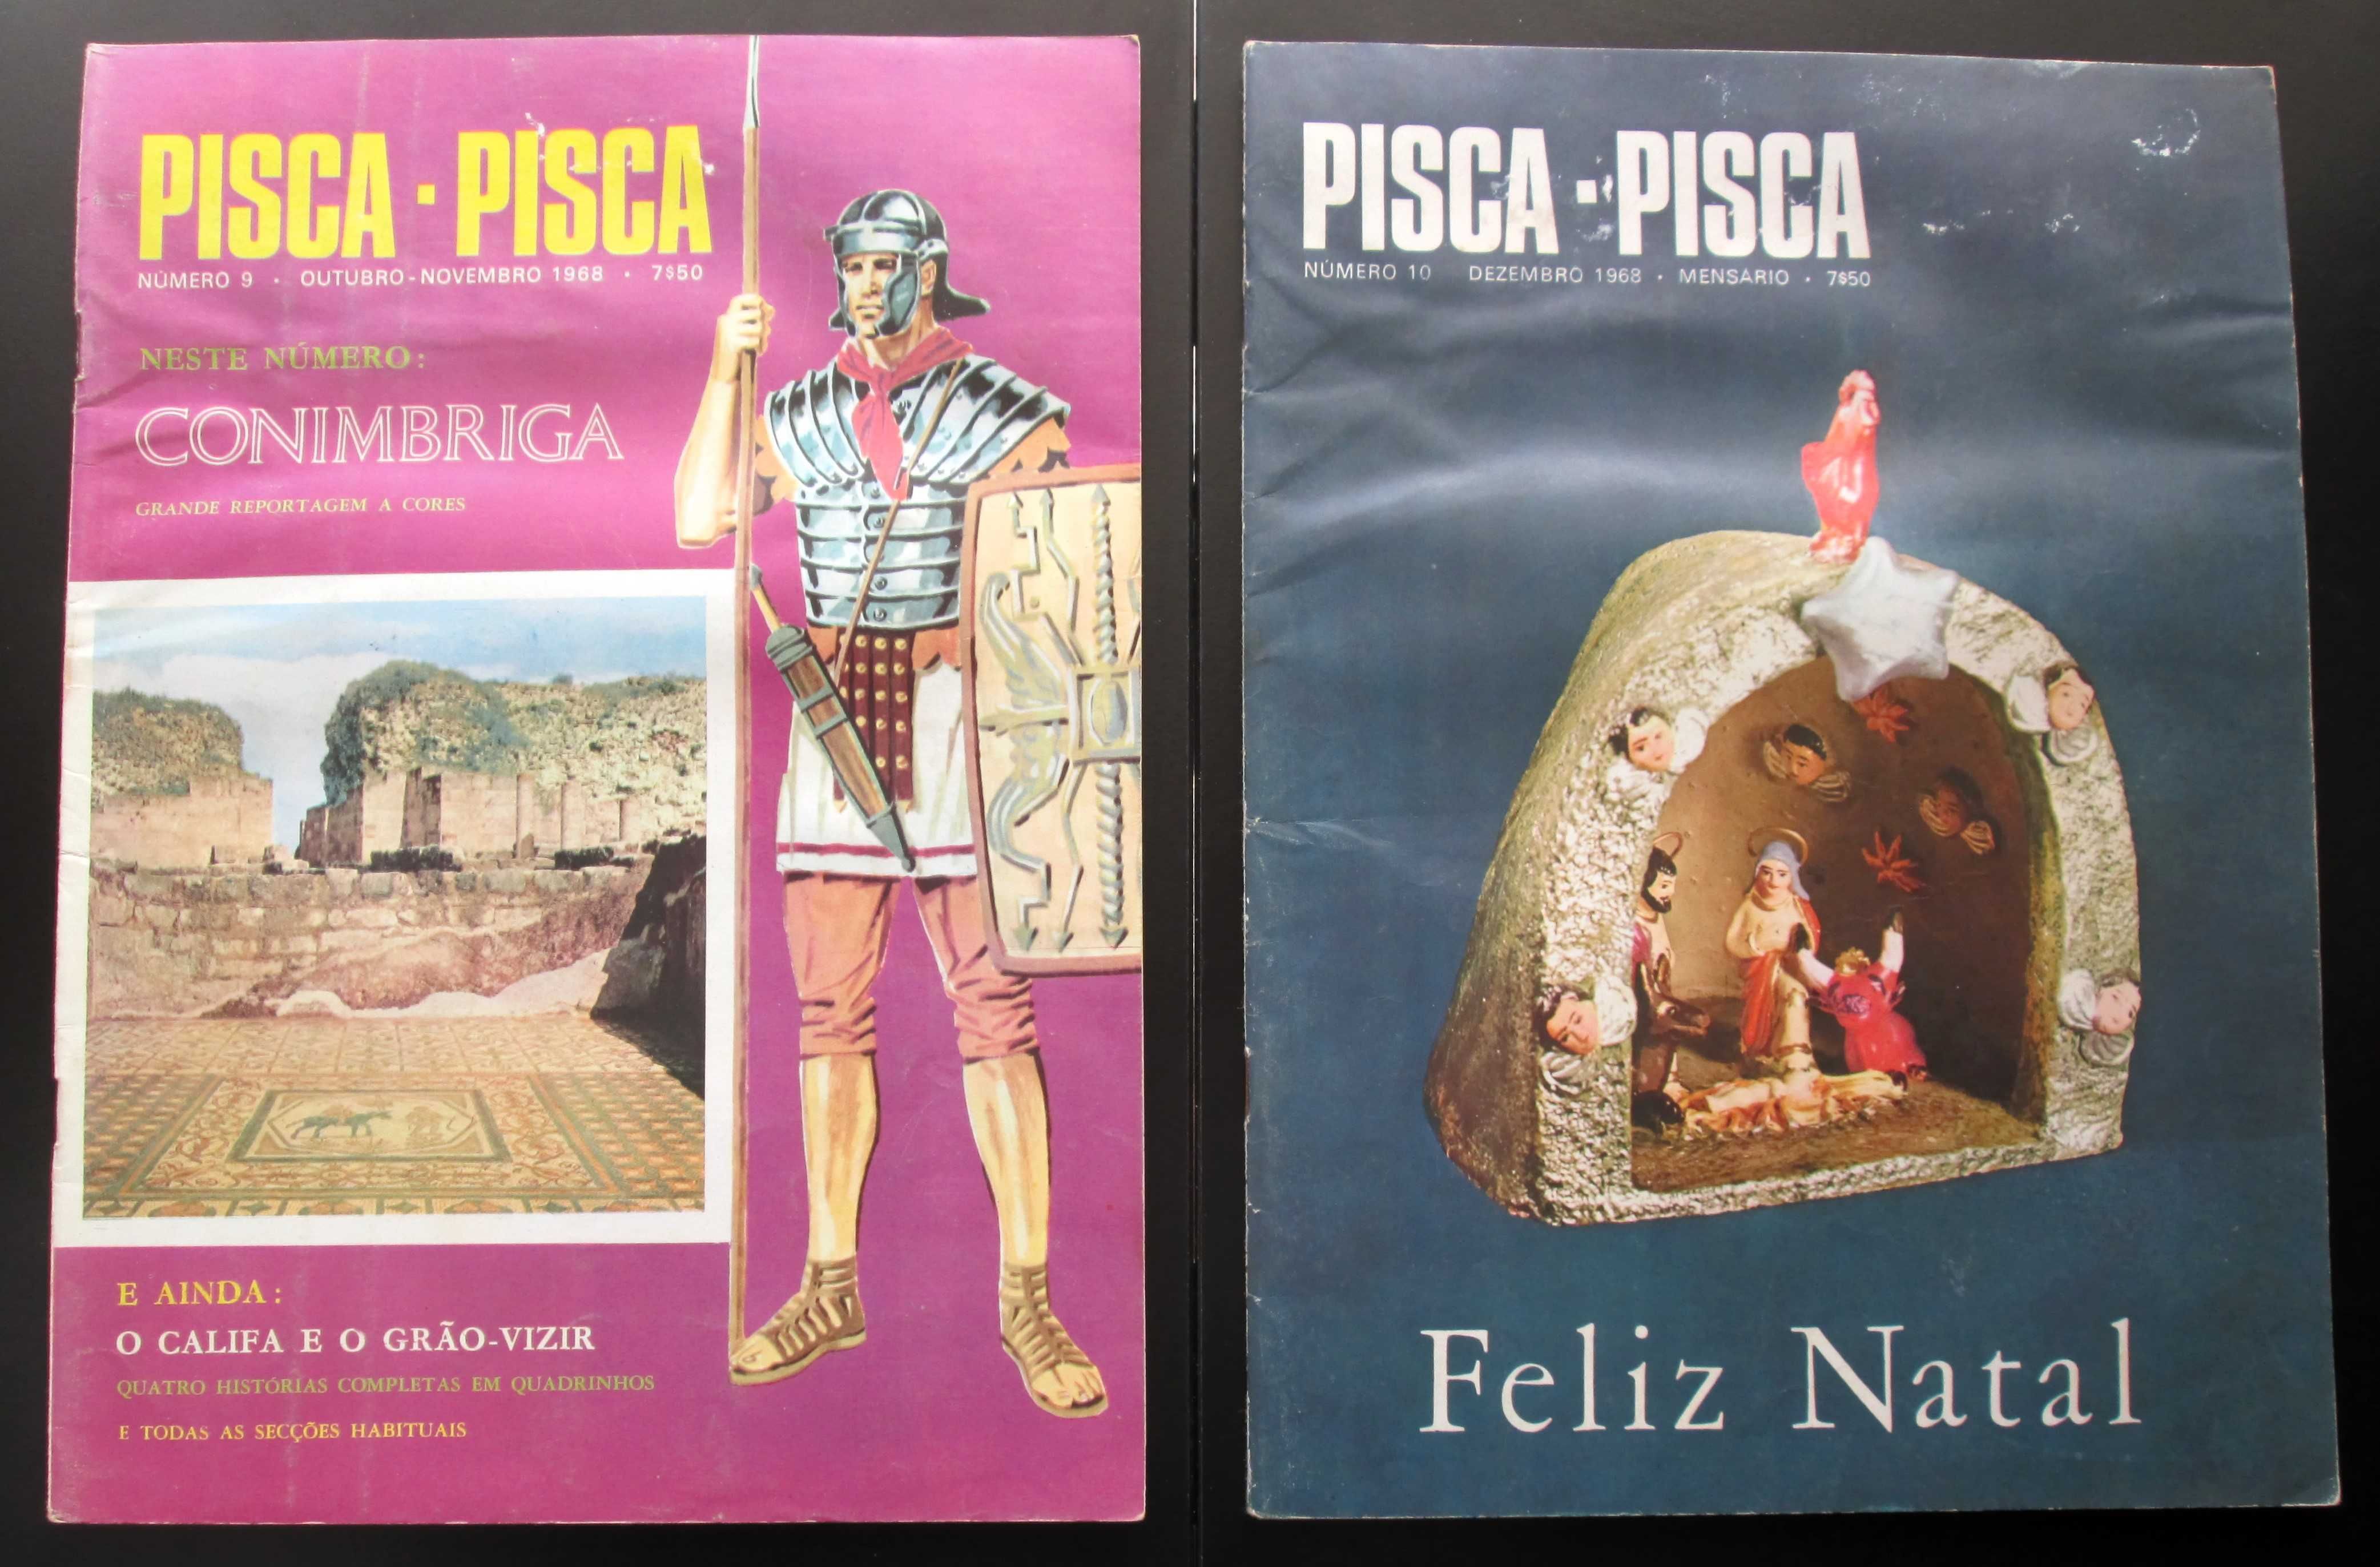 revista juvenil Pisca - Pisca (Mocidade Portuguesa)